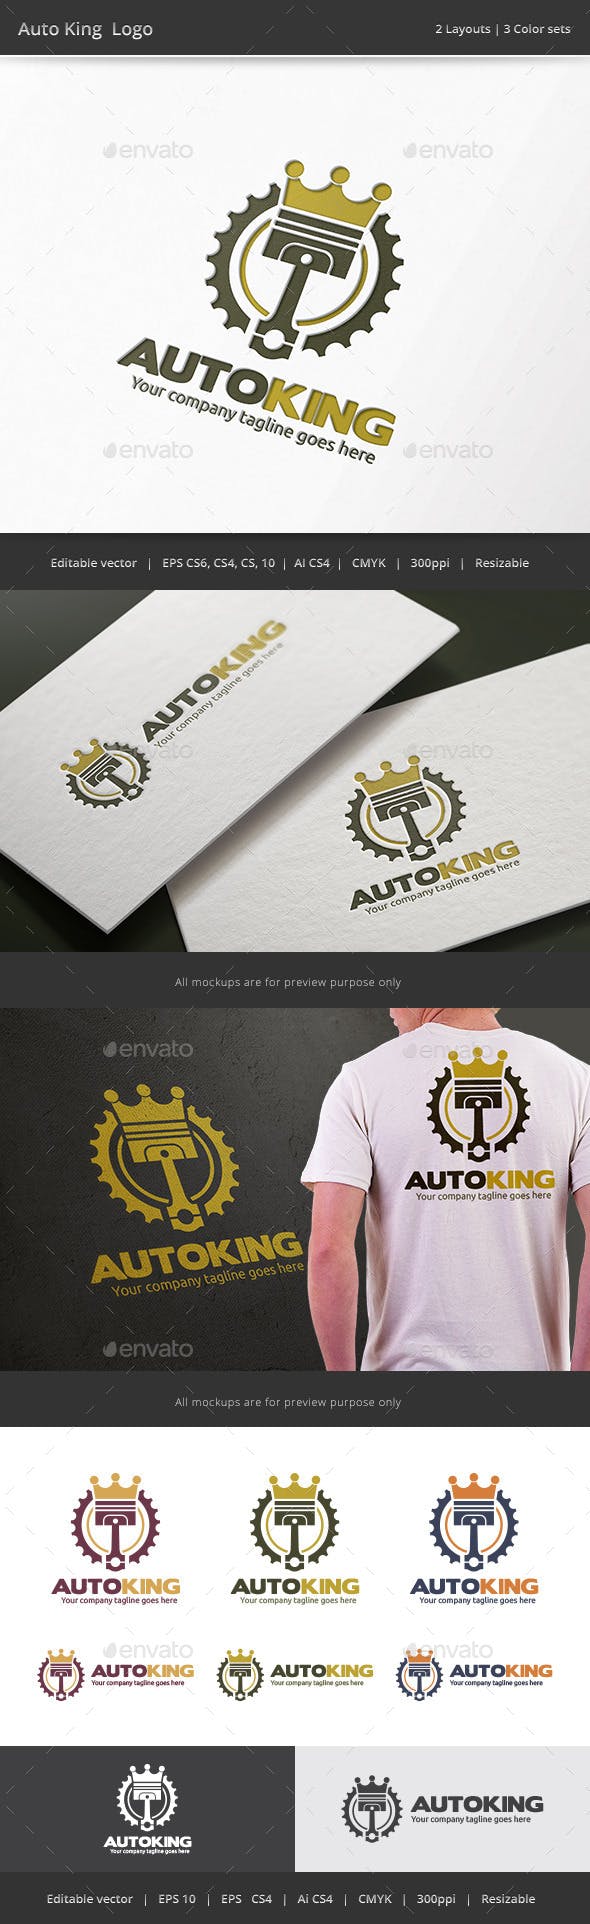 Auto King Logo - Auto King Piston Logo